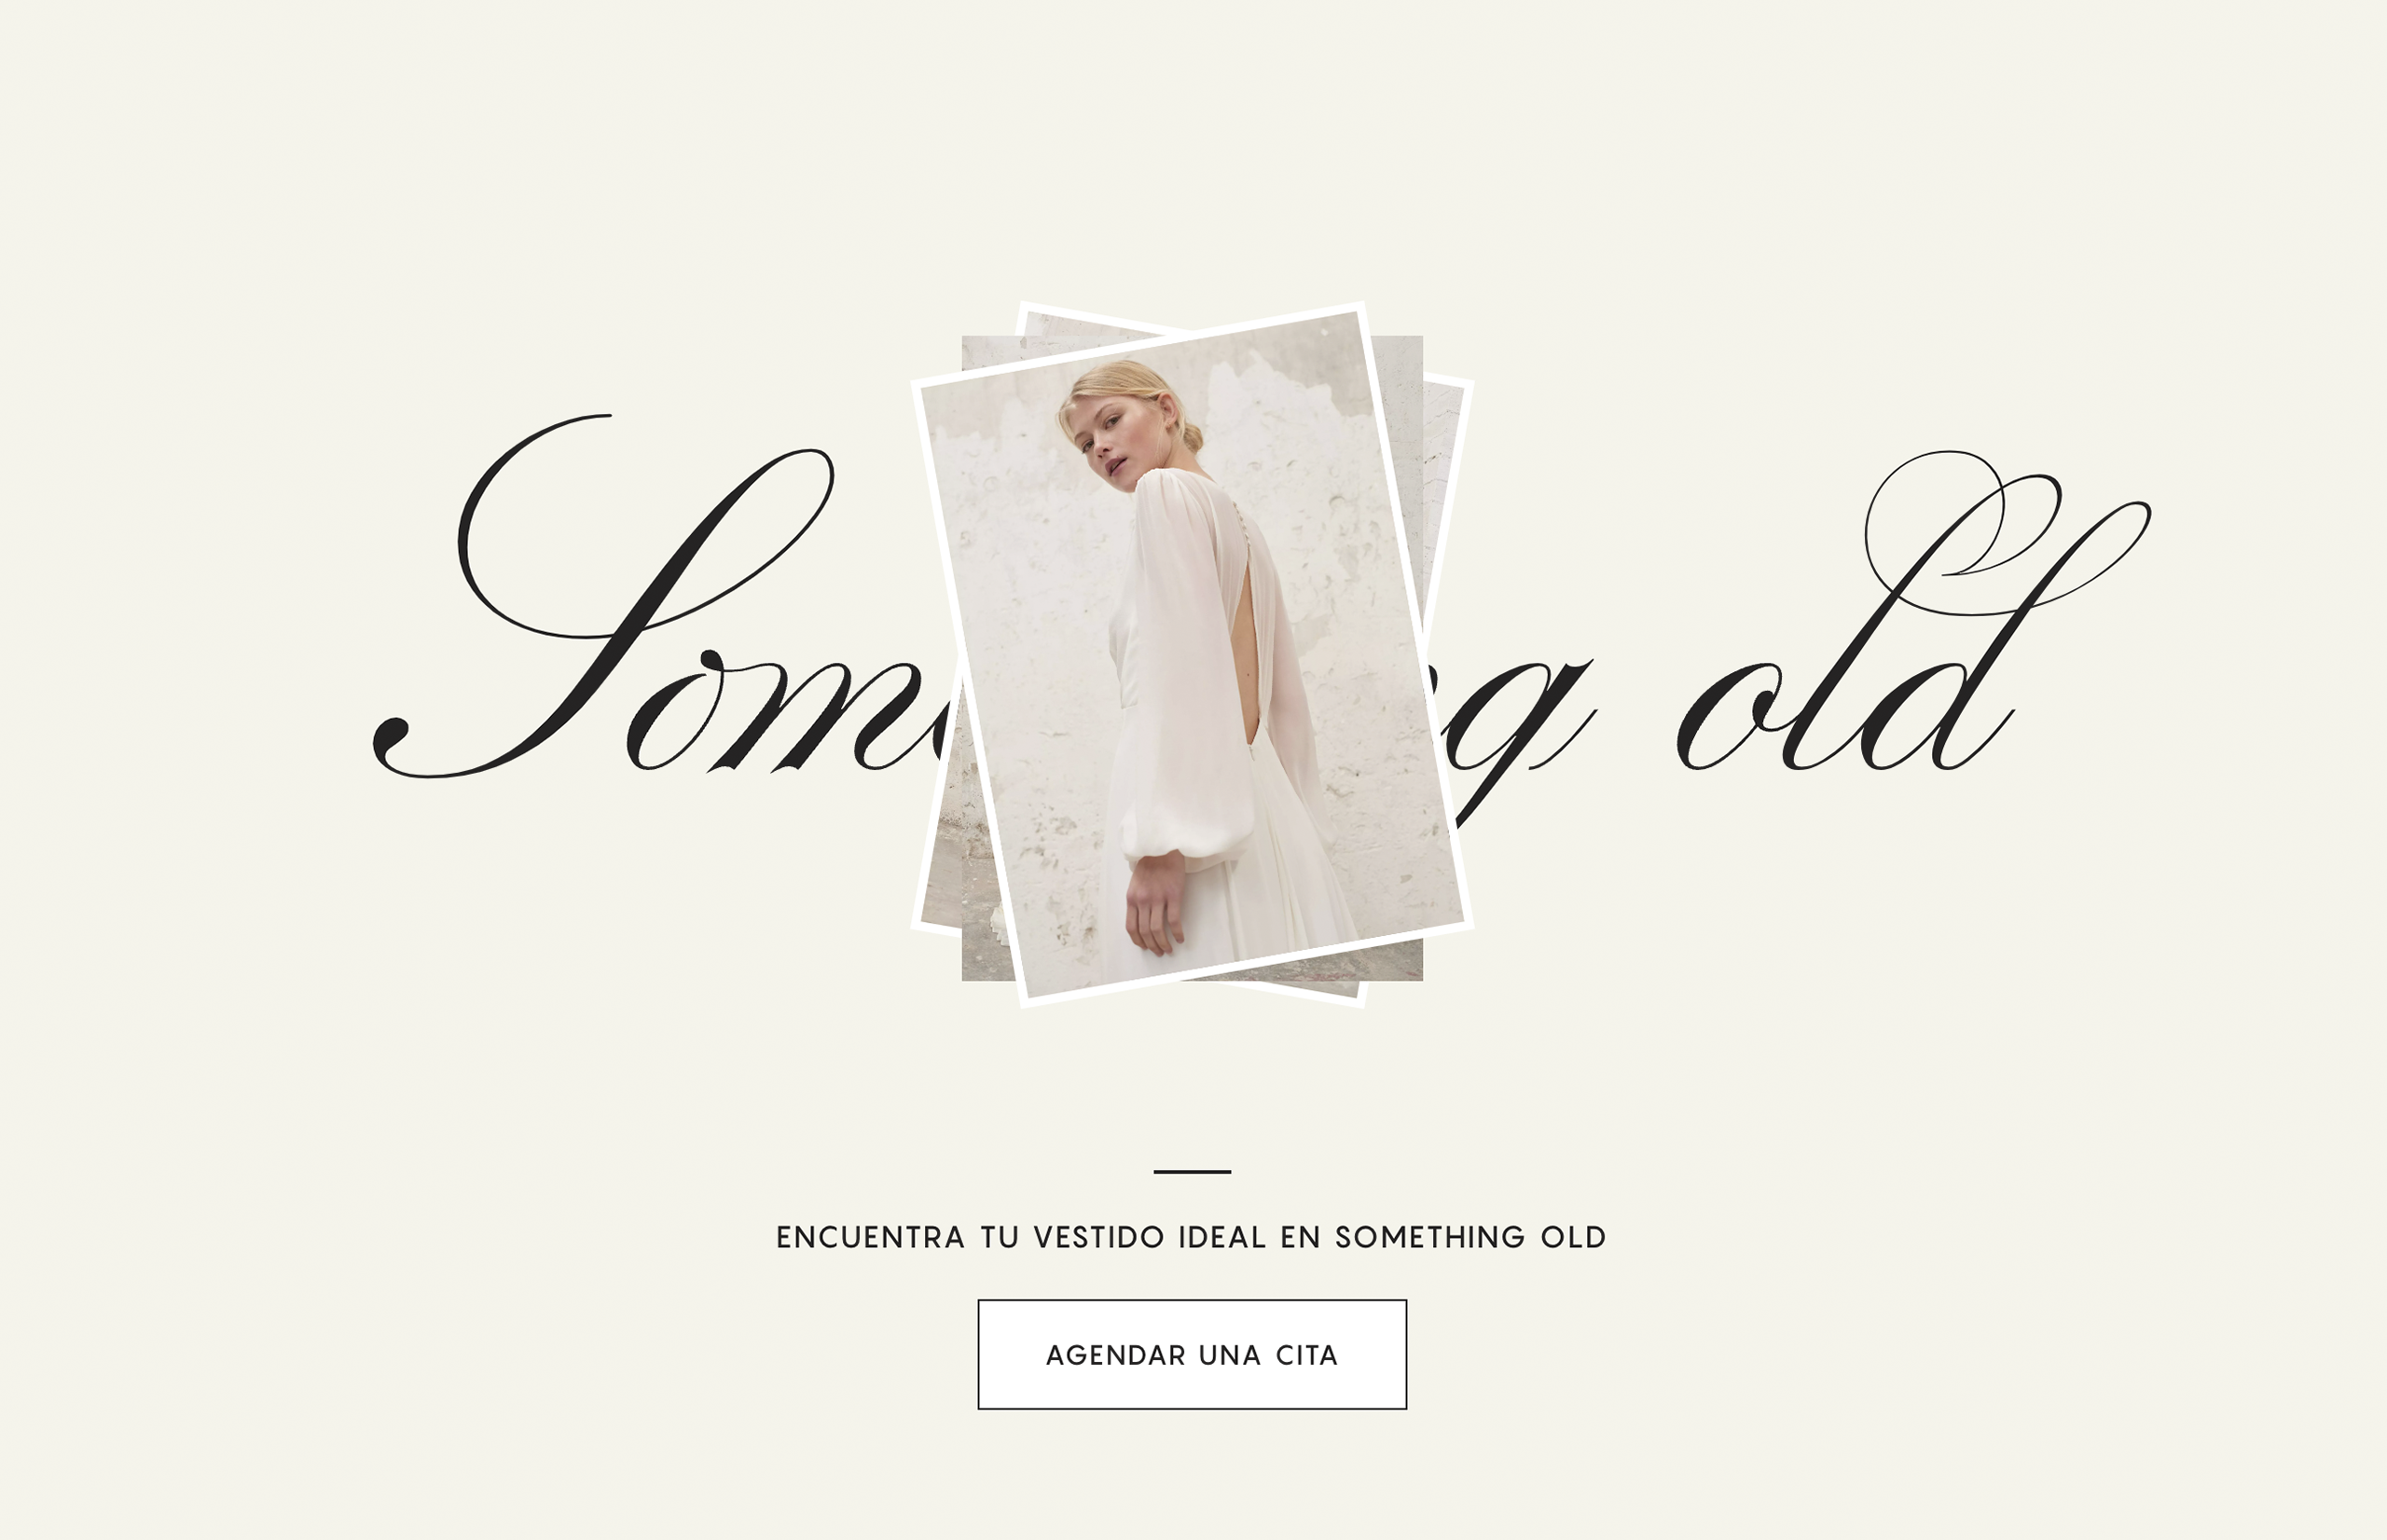 ▷ Ejemplo de página web para vestidos de boda [A medida]